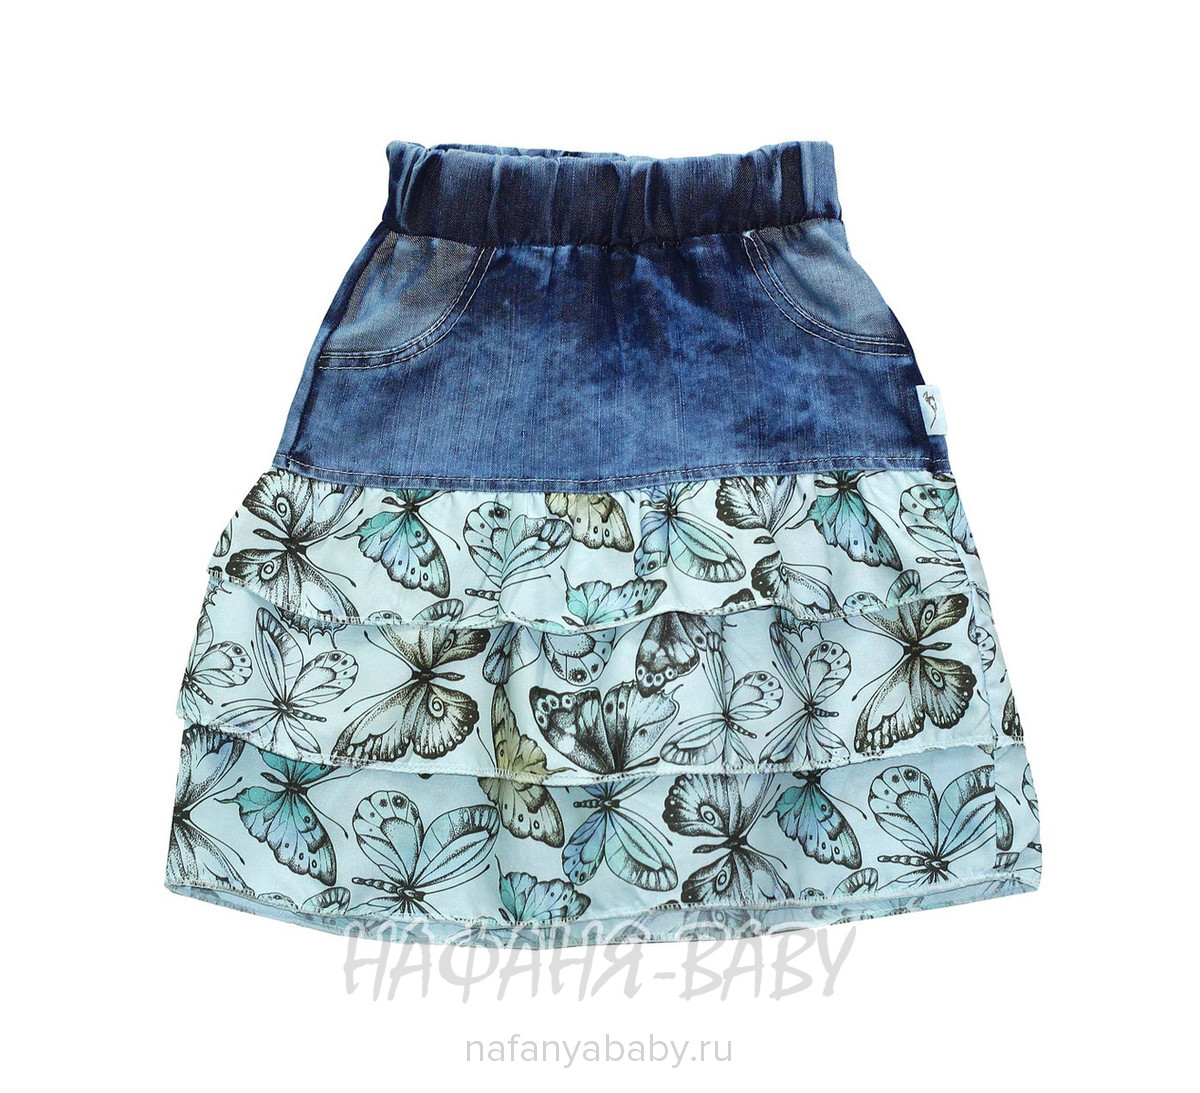 Детская джинсовая юбка AKIRA, купить в интернет магазине Нафаня. арт: 2347.